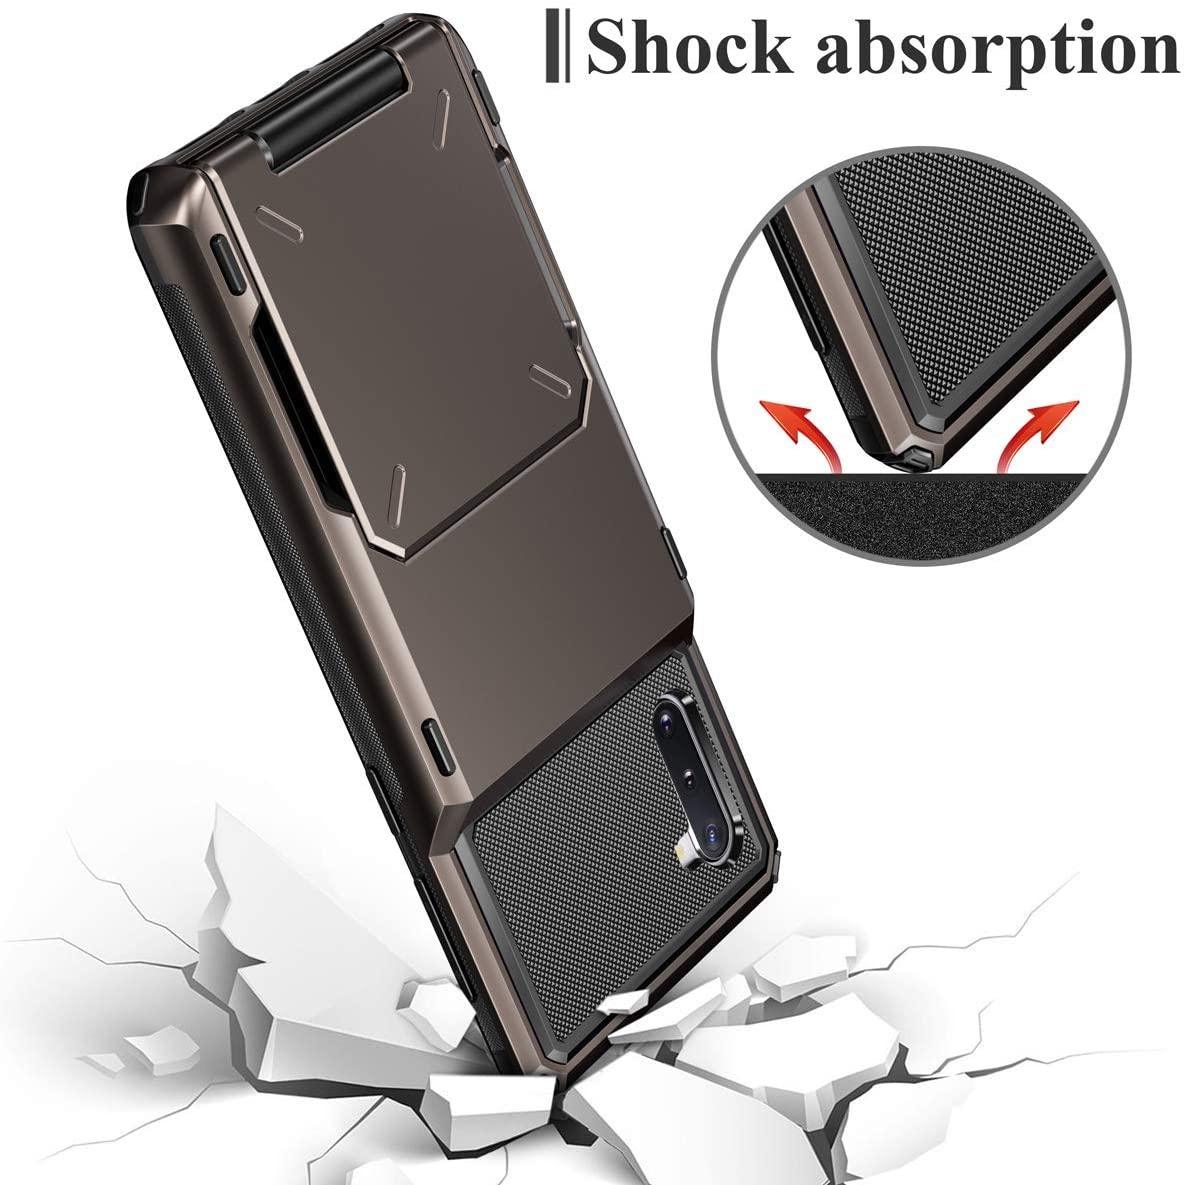 Slide Armor Wallet Card Holder Case For Samsung - Purple - SuperShop.Rocks